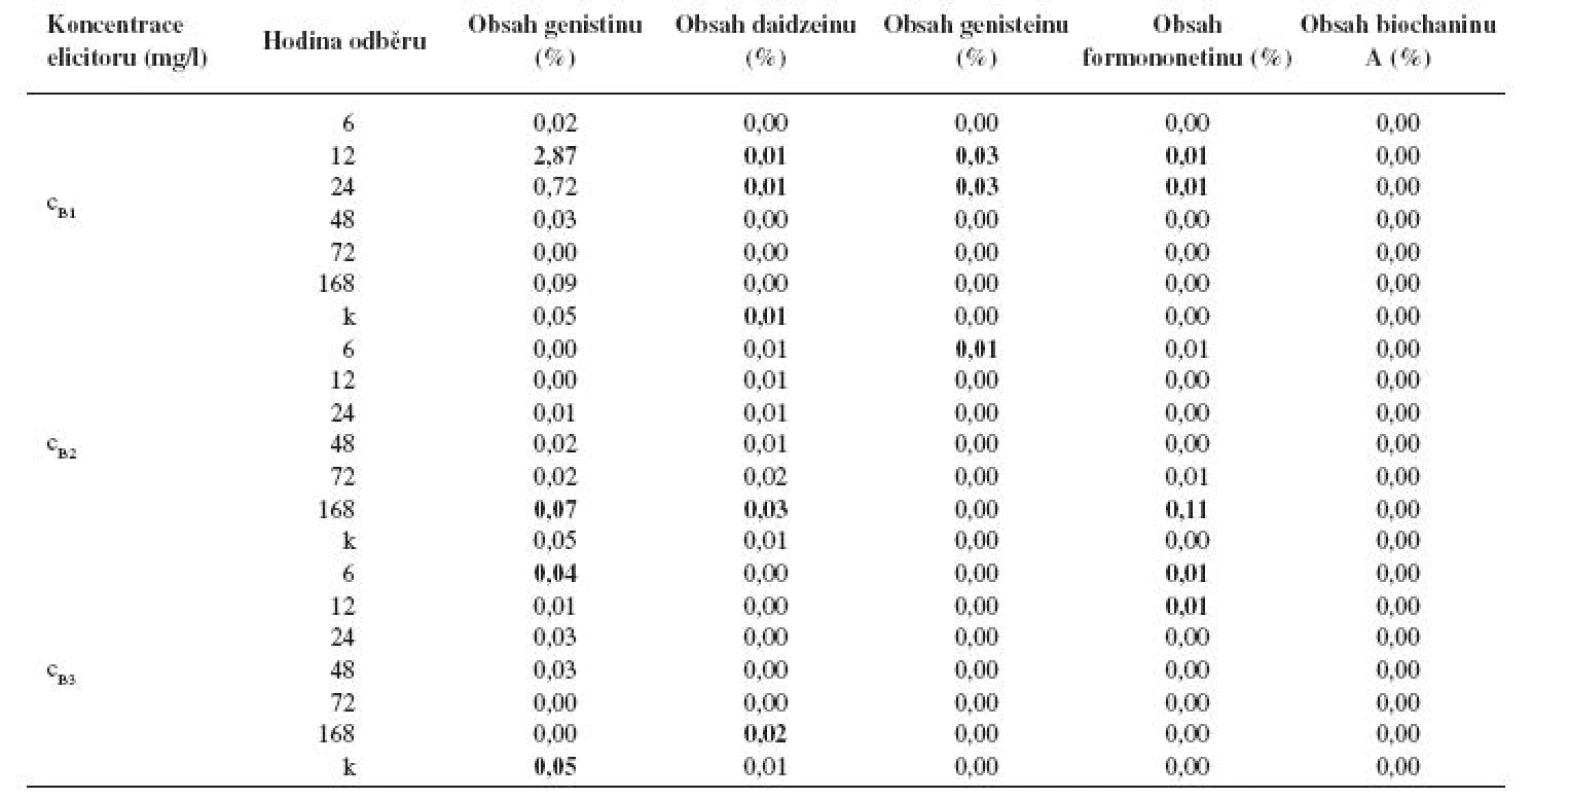 Obsah jednotlivých isoflavonoidů (%) v kalusové kultuře Genista tinctoria po elicitaci látkou B o různé koncentraci v závislosti na době odběru